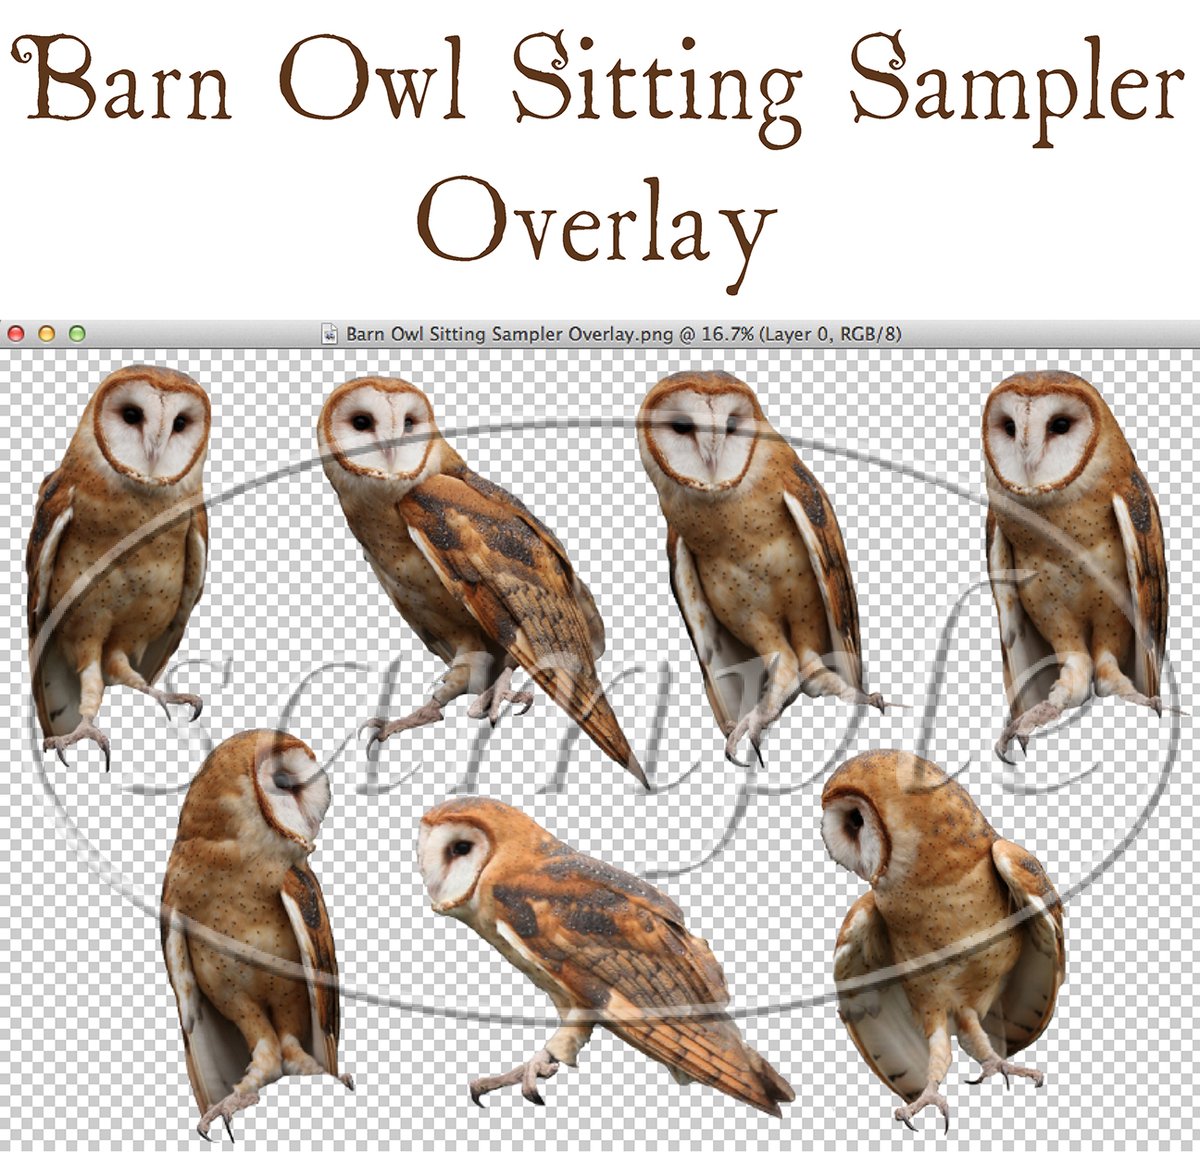 Image of Barn Owl Sitting Sampler Overlay